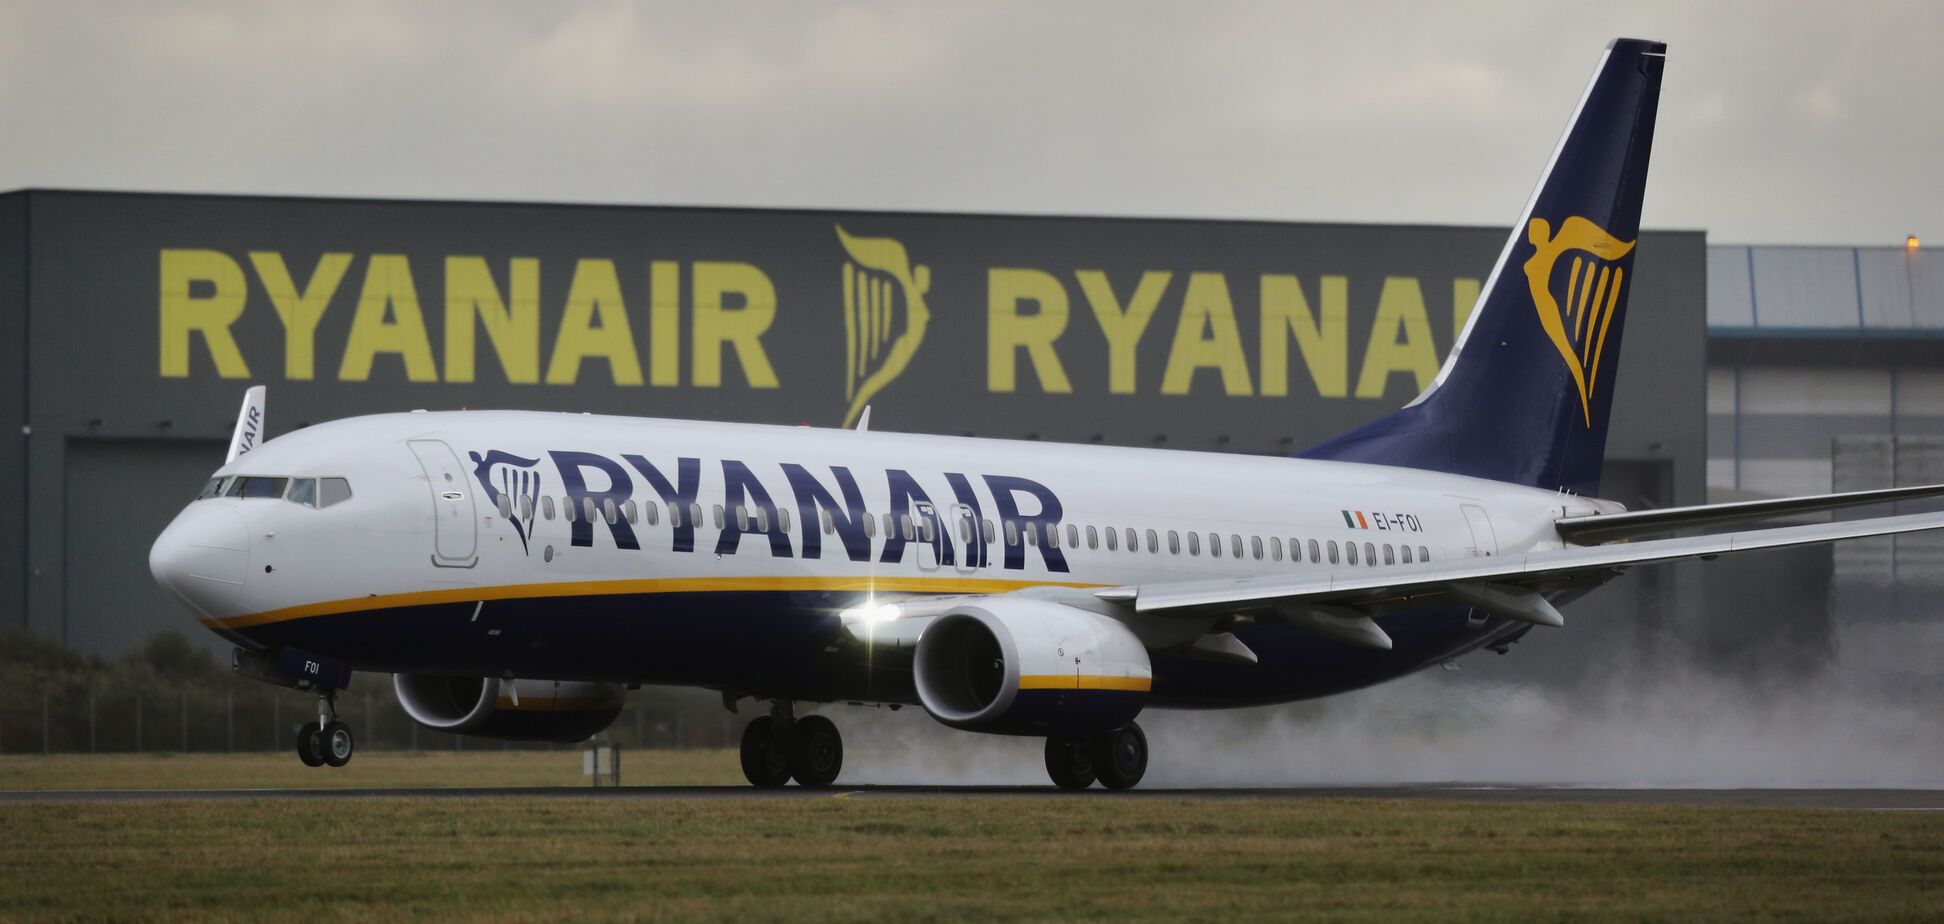 Красивые девушки и дешевое пиво: в Британии разрекламировали Украину после прихода Ryanair